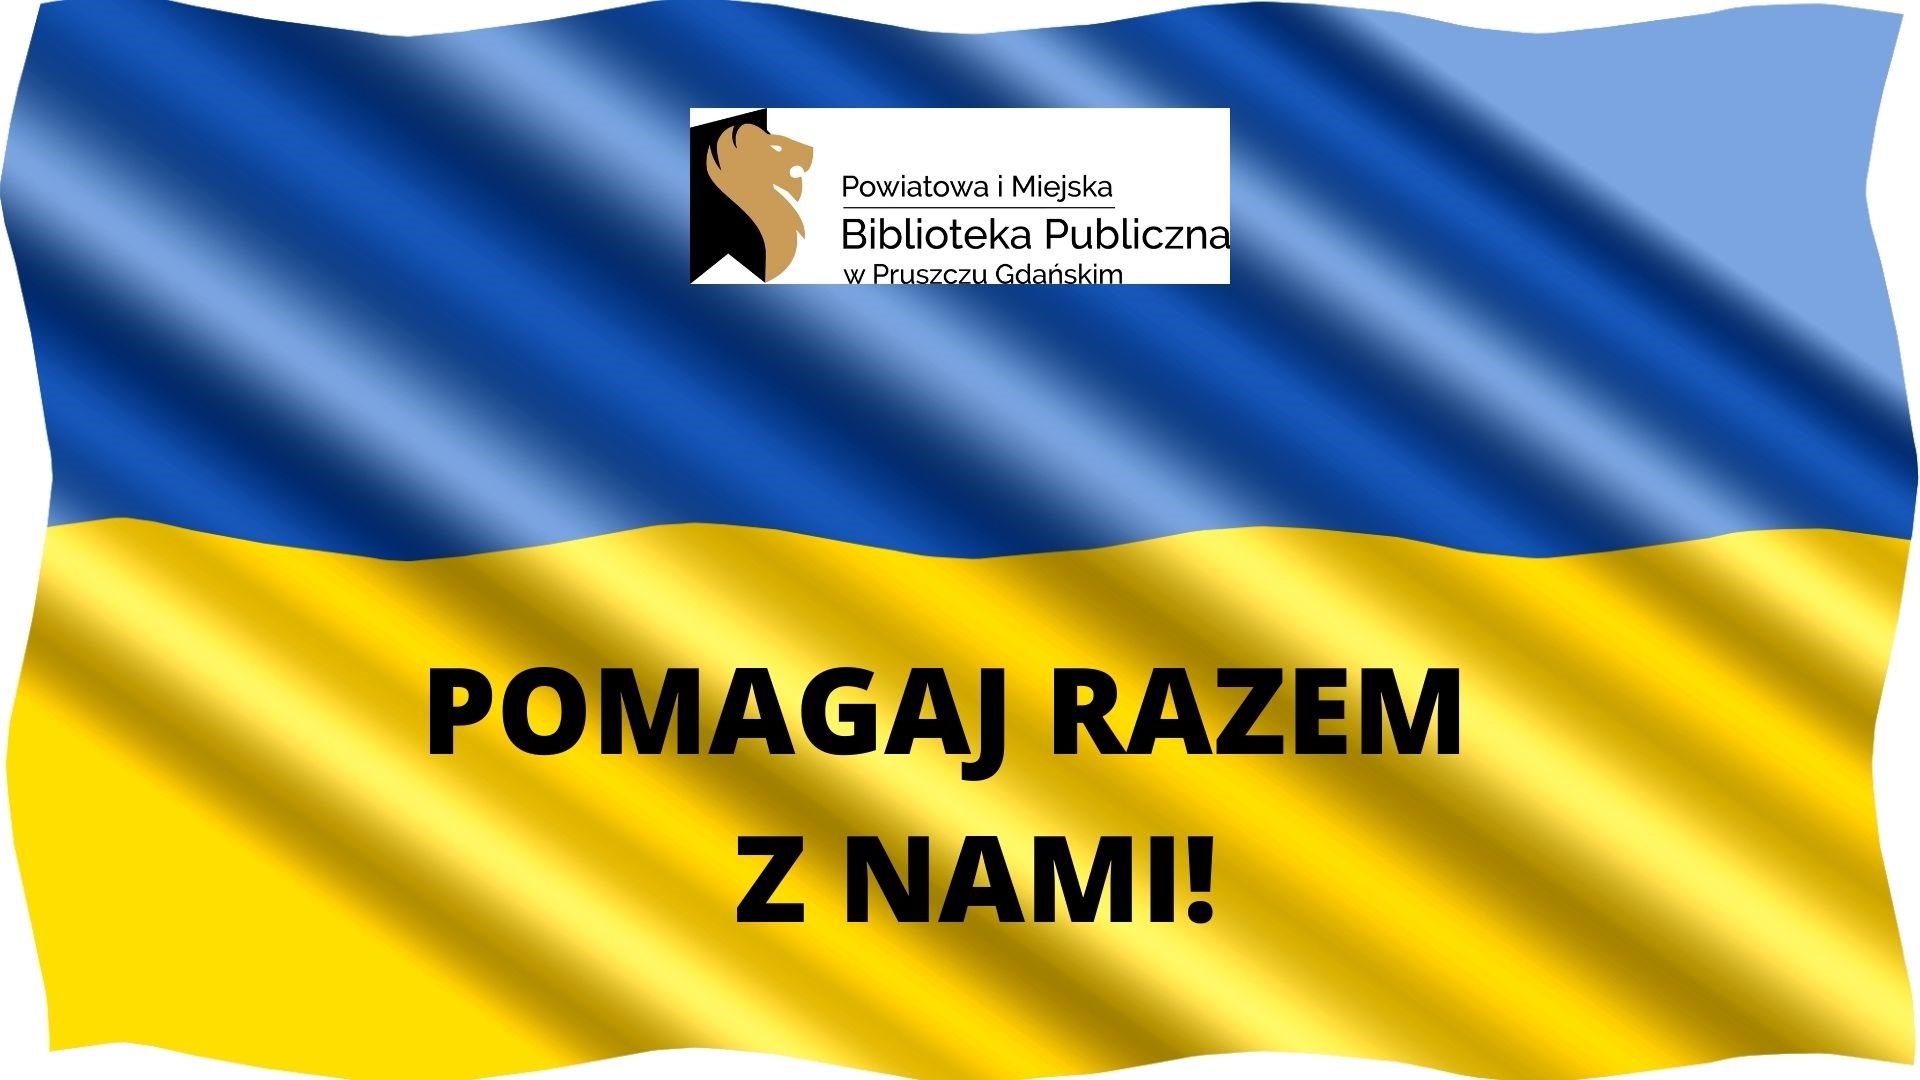 Flaga ukrainy: niebiesko-żółta. Logotyp oraz napis: Powiatowa i Miejska Biblioteka Publiczna w Pruszczu Gdańskim oraz Pomagaj razem z nami!